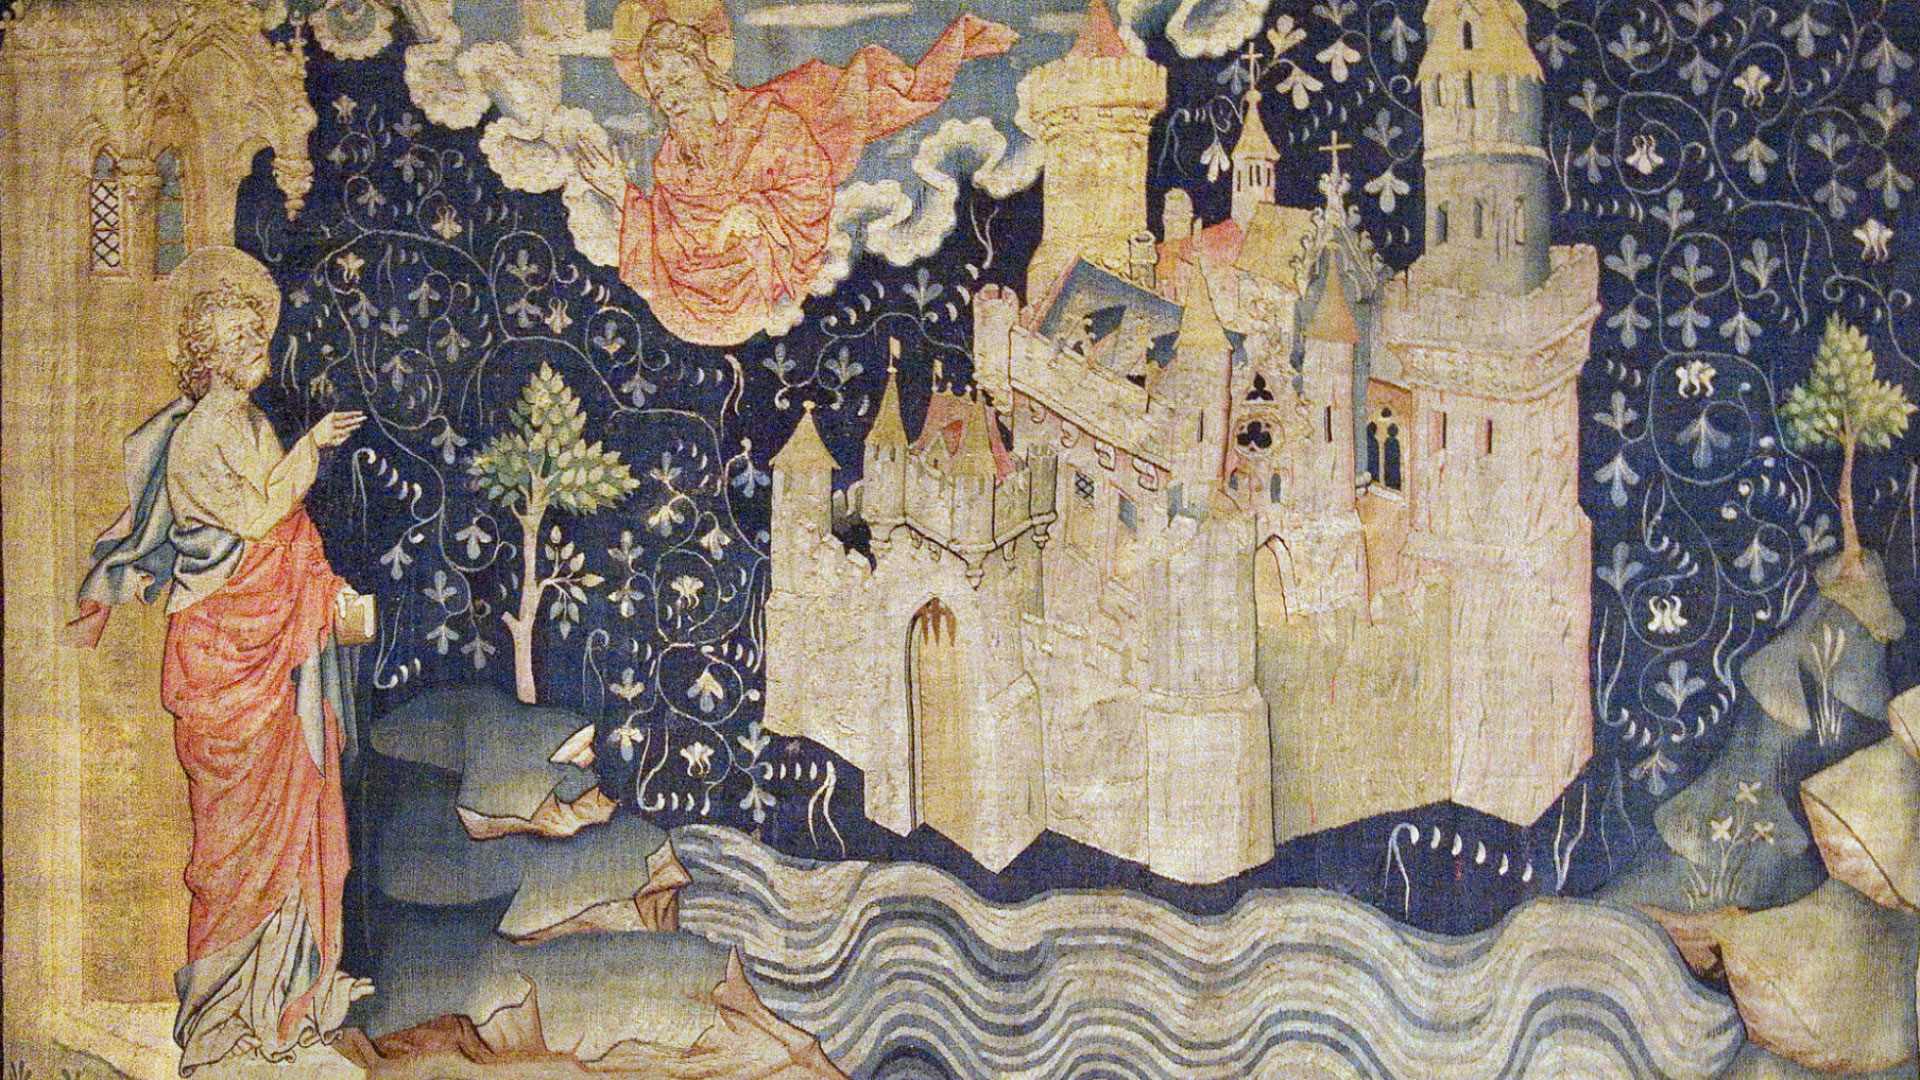 Reflecting Jerusalem in Medieval Czech Lands